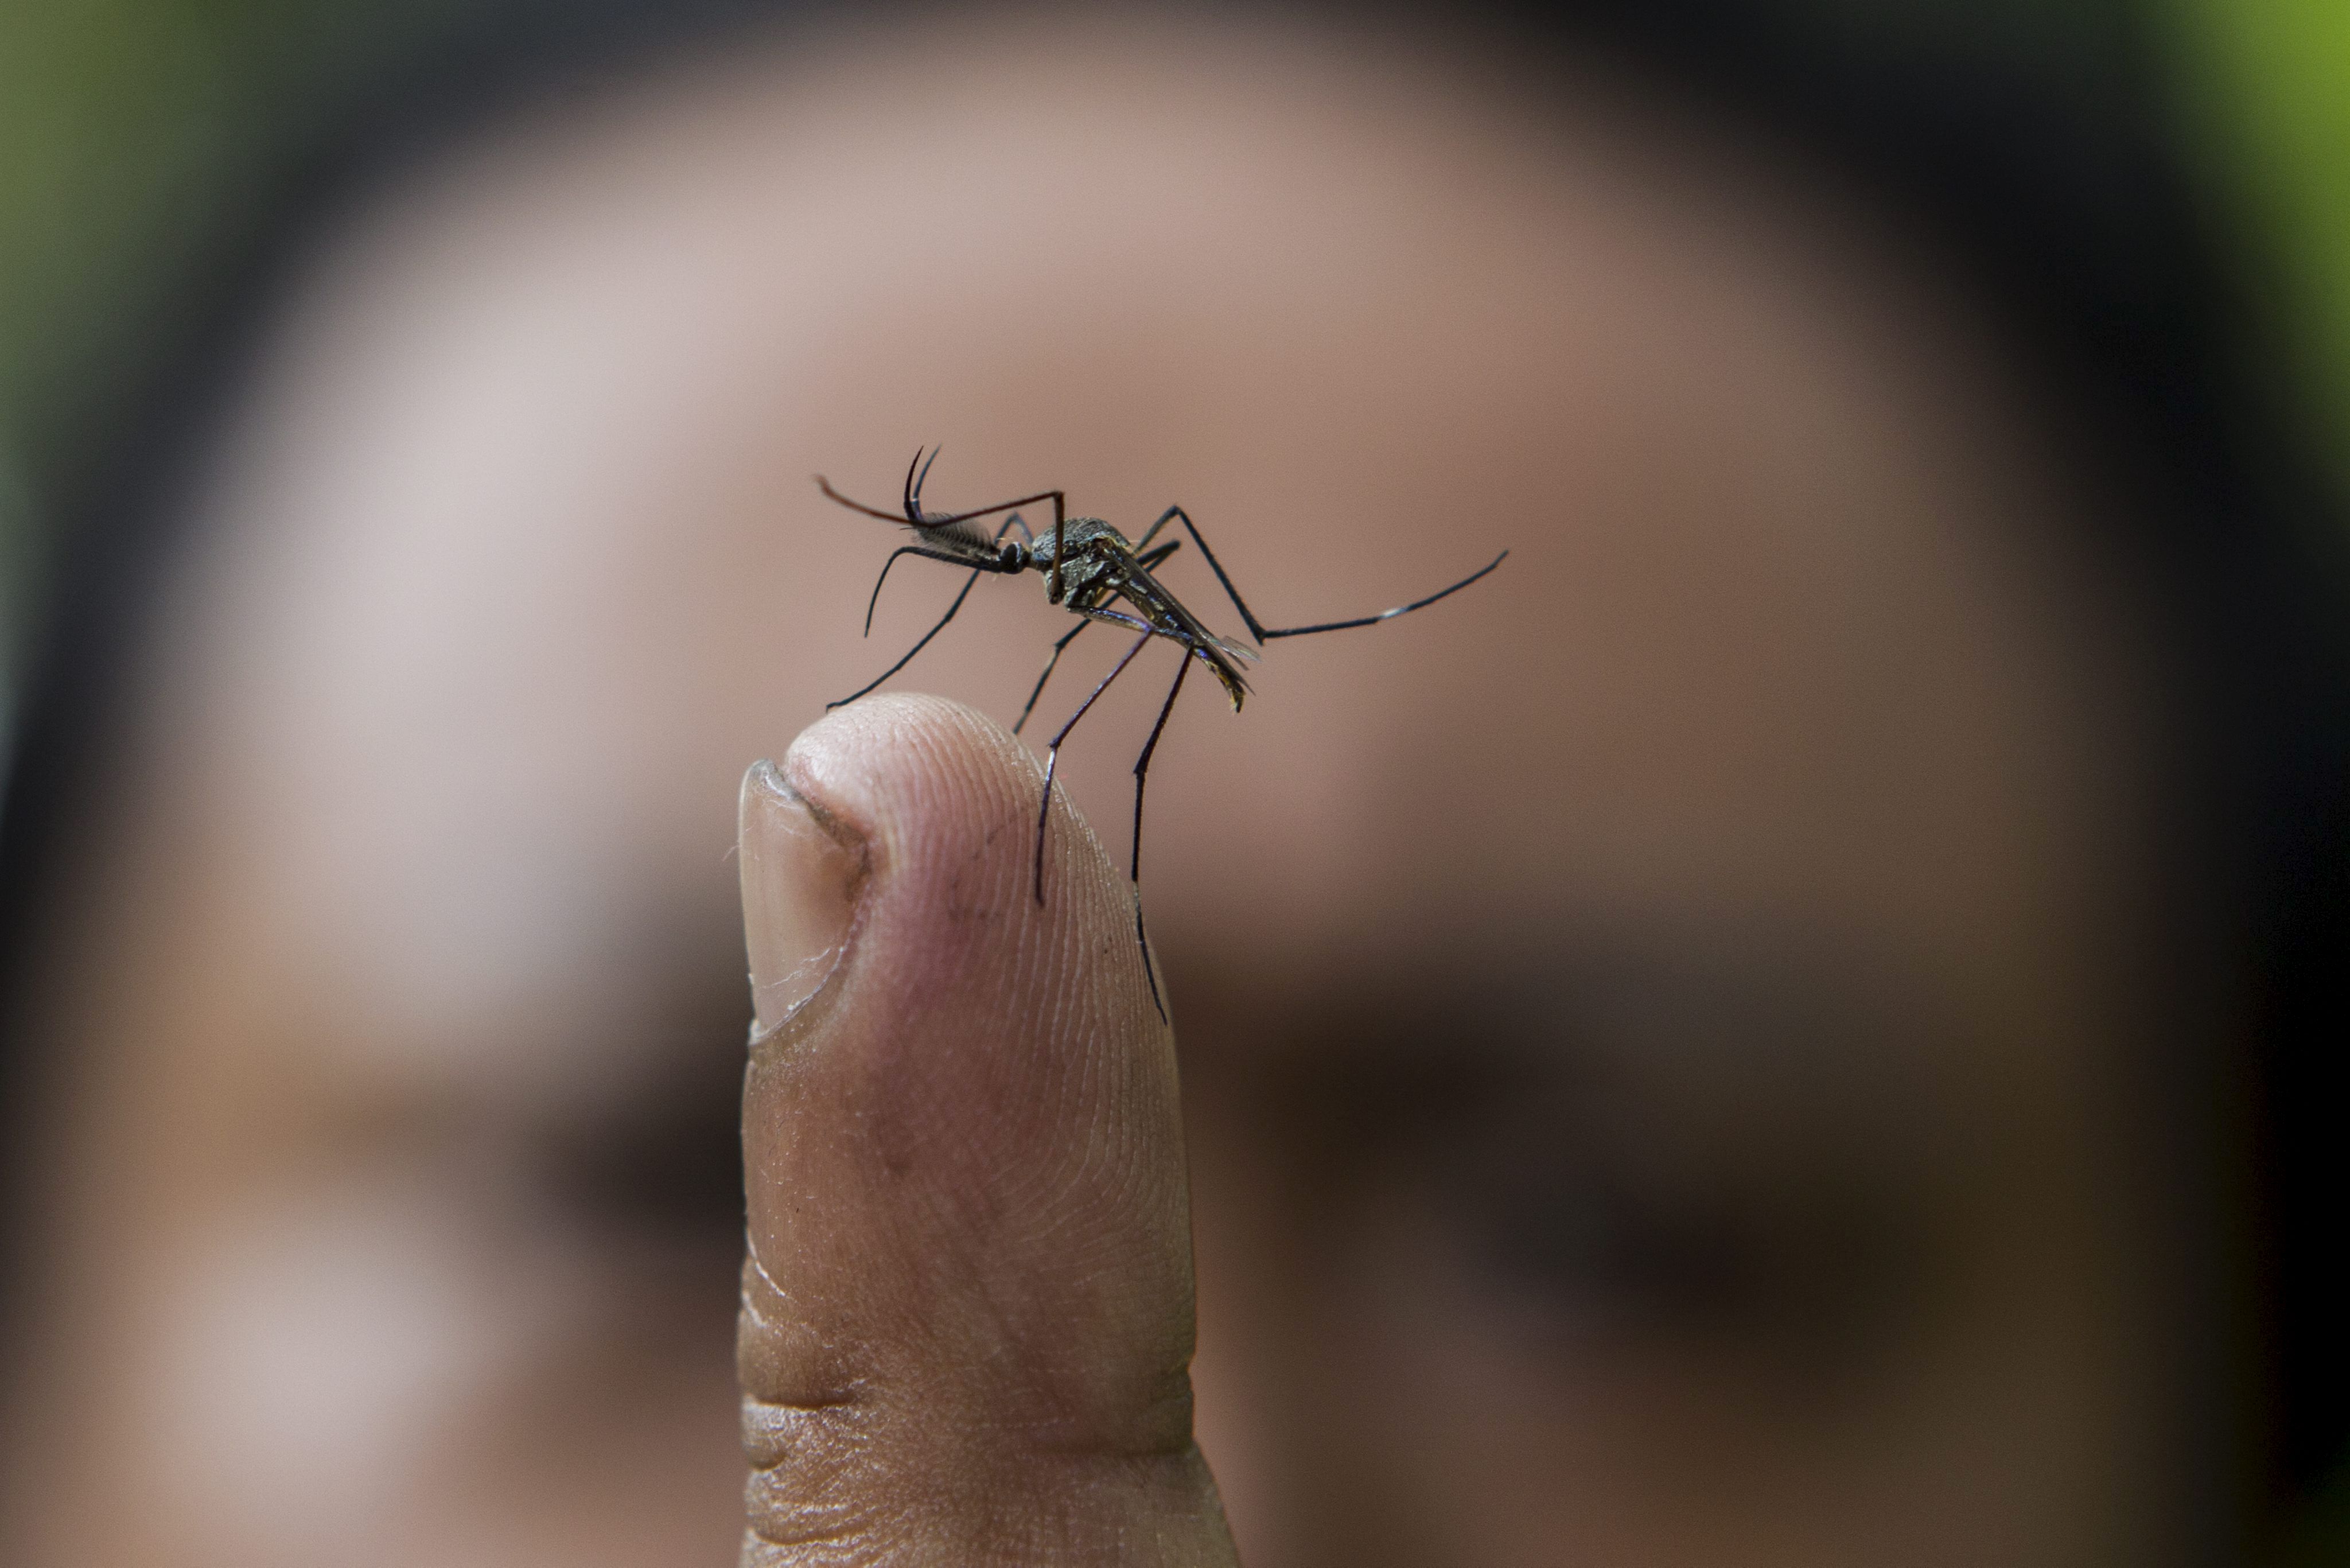 YUS03 PUCHONG (MALASIA) 30/07/2012.- Plano detalle de un mosquito del género Toxorhynchites (Toxo), un mosquito carnívoro que comerá larvas del mosquito causante del dengue, en Puchong, cerca de Kuala Lumpur (Malasia) hoy, lunes 30 de julio de 2012. La larva de las especies de mosquito toxo fue escogida debido a su dieta basada en larvas de mosquitos de otras especies y además este mosquito vive en el mismo hábitat. Según la Organización Mundial de la Salud, se producen entre 50 y 100 millones de casos de dengue cada año. EFE/Ahmad Yusni